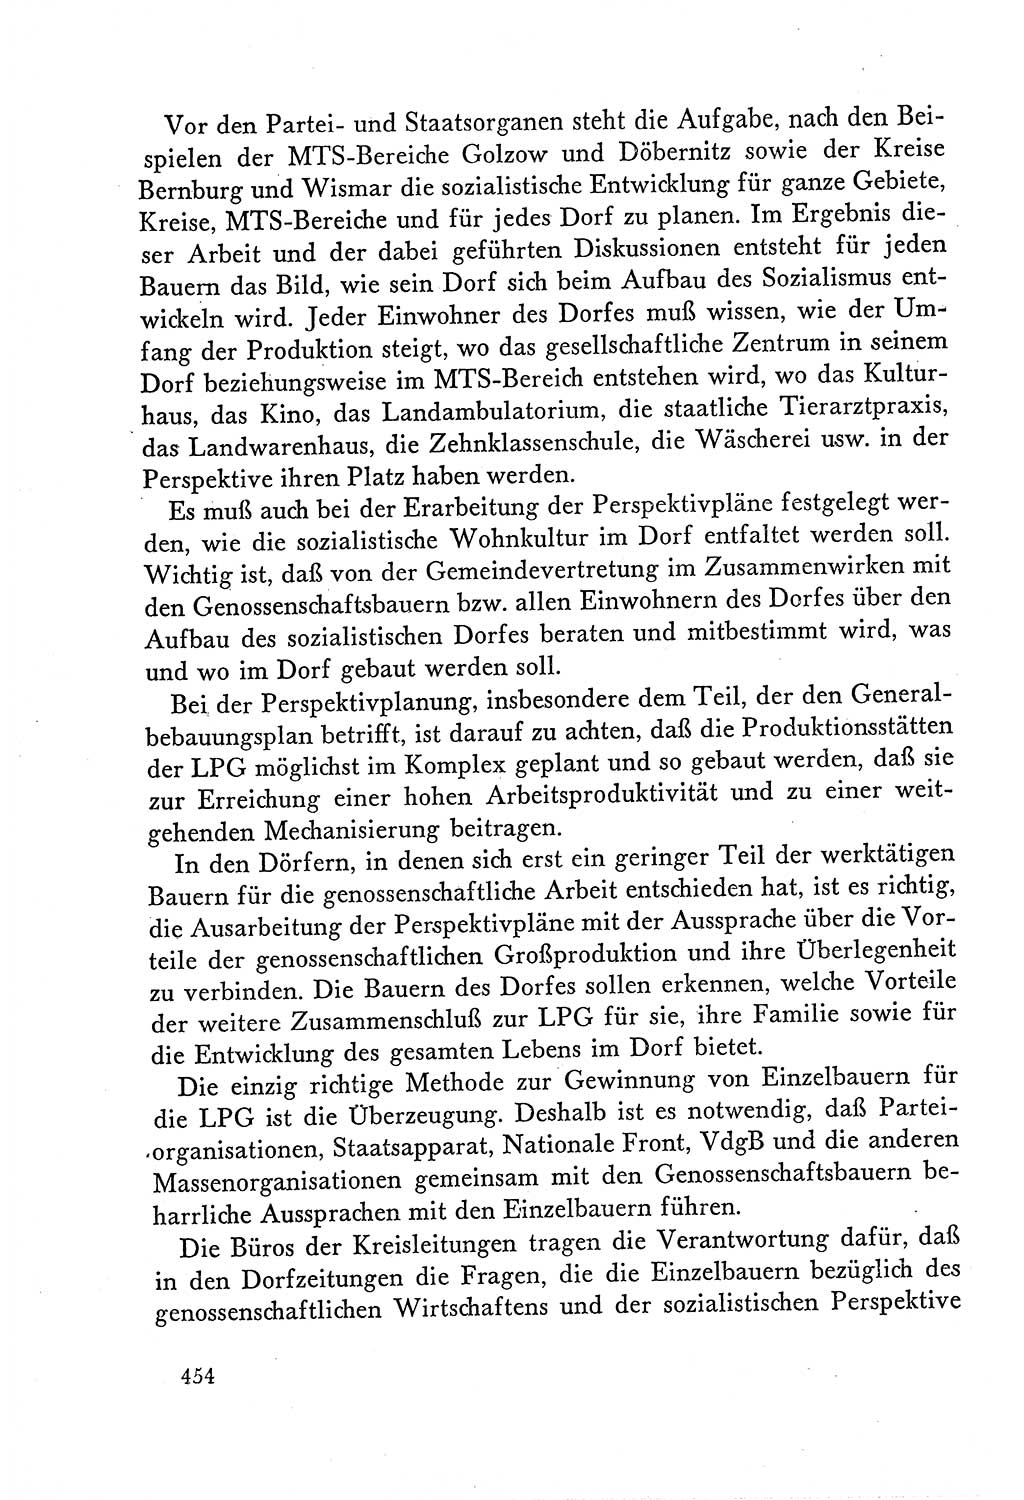 Dokumente der Sozialistischen Einheitspartei Deutschlands (SED) [Deutsche Demokratische Republik (DDR)] 1958-1959, Seite 454 (Dok. SED DDR 1958-1959, S. 454)